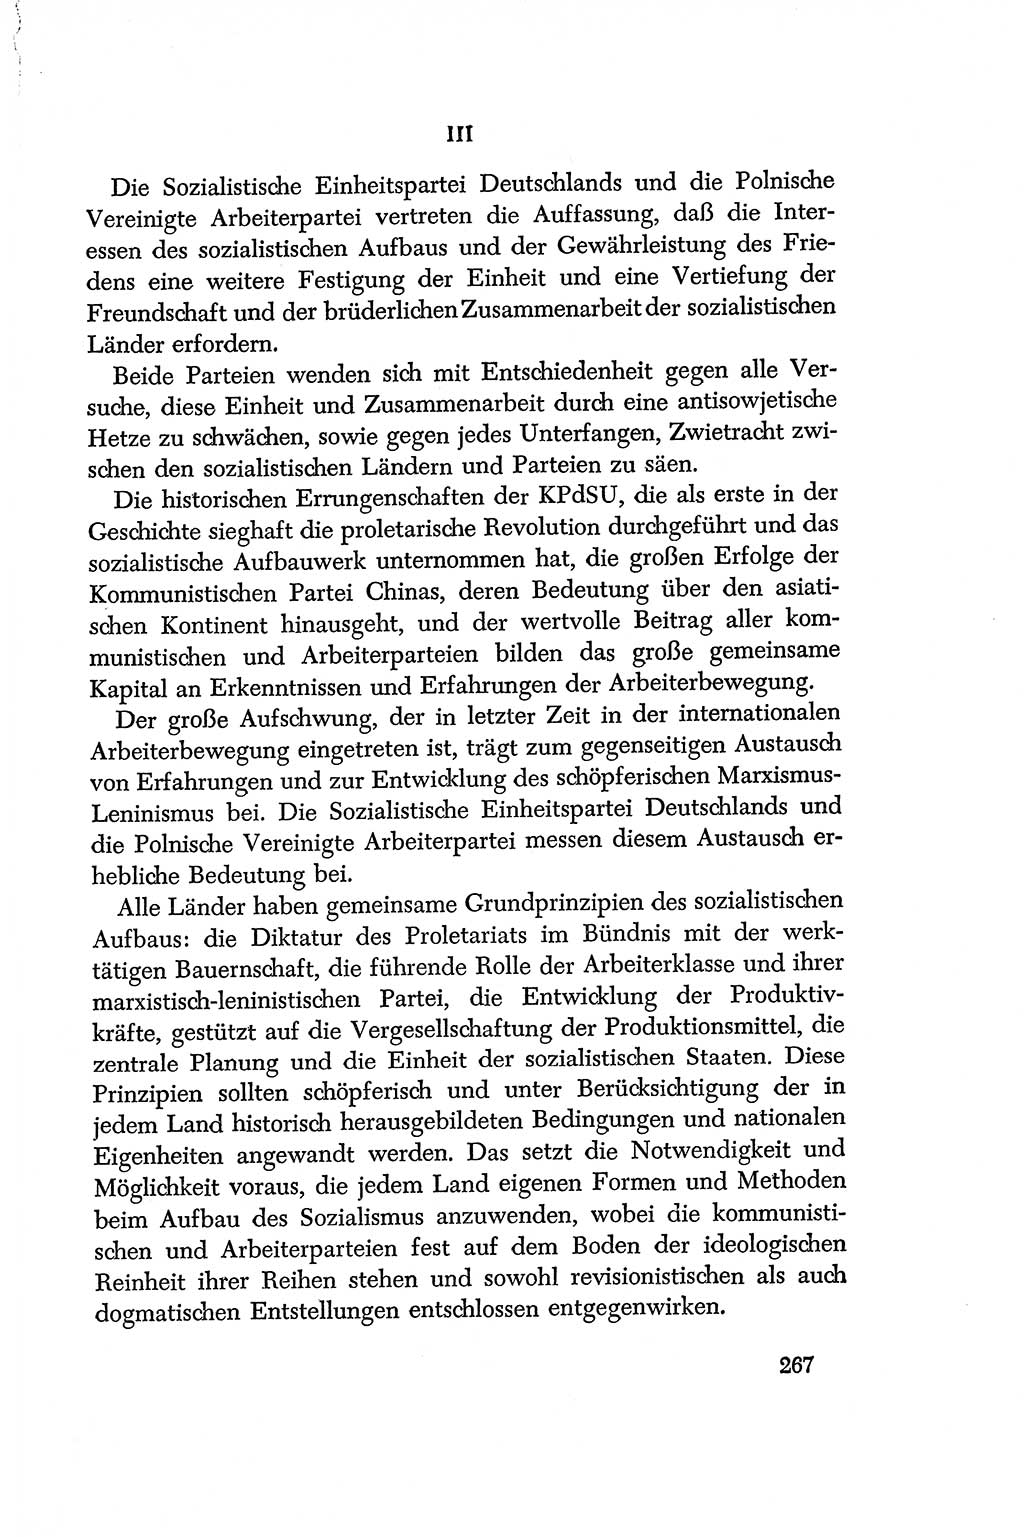 Dokumente der Sozialistischen Einheitspartei Deutschlands (SED) [Deutsche Demokratische Republik (DDR)] 1956-1957, Seite 267 (Dok. SED DDR 1956-1957, S. 267)